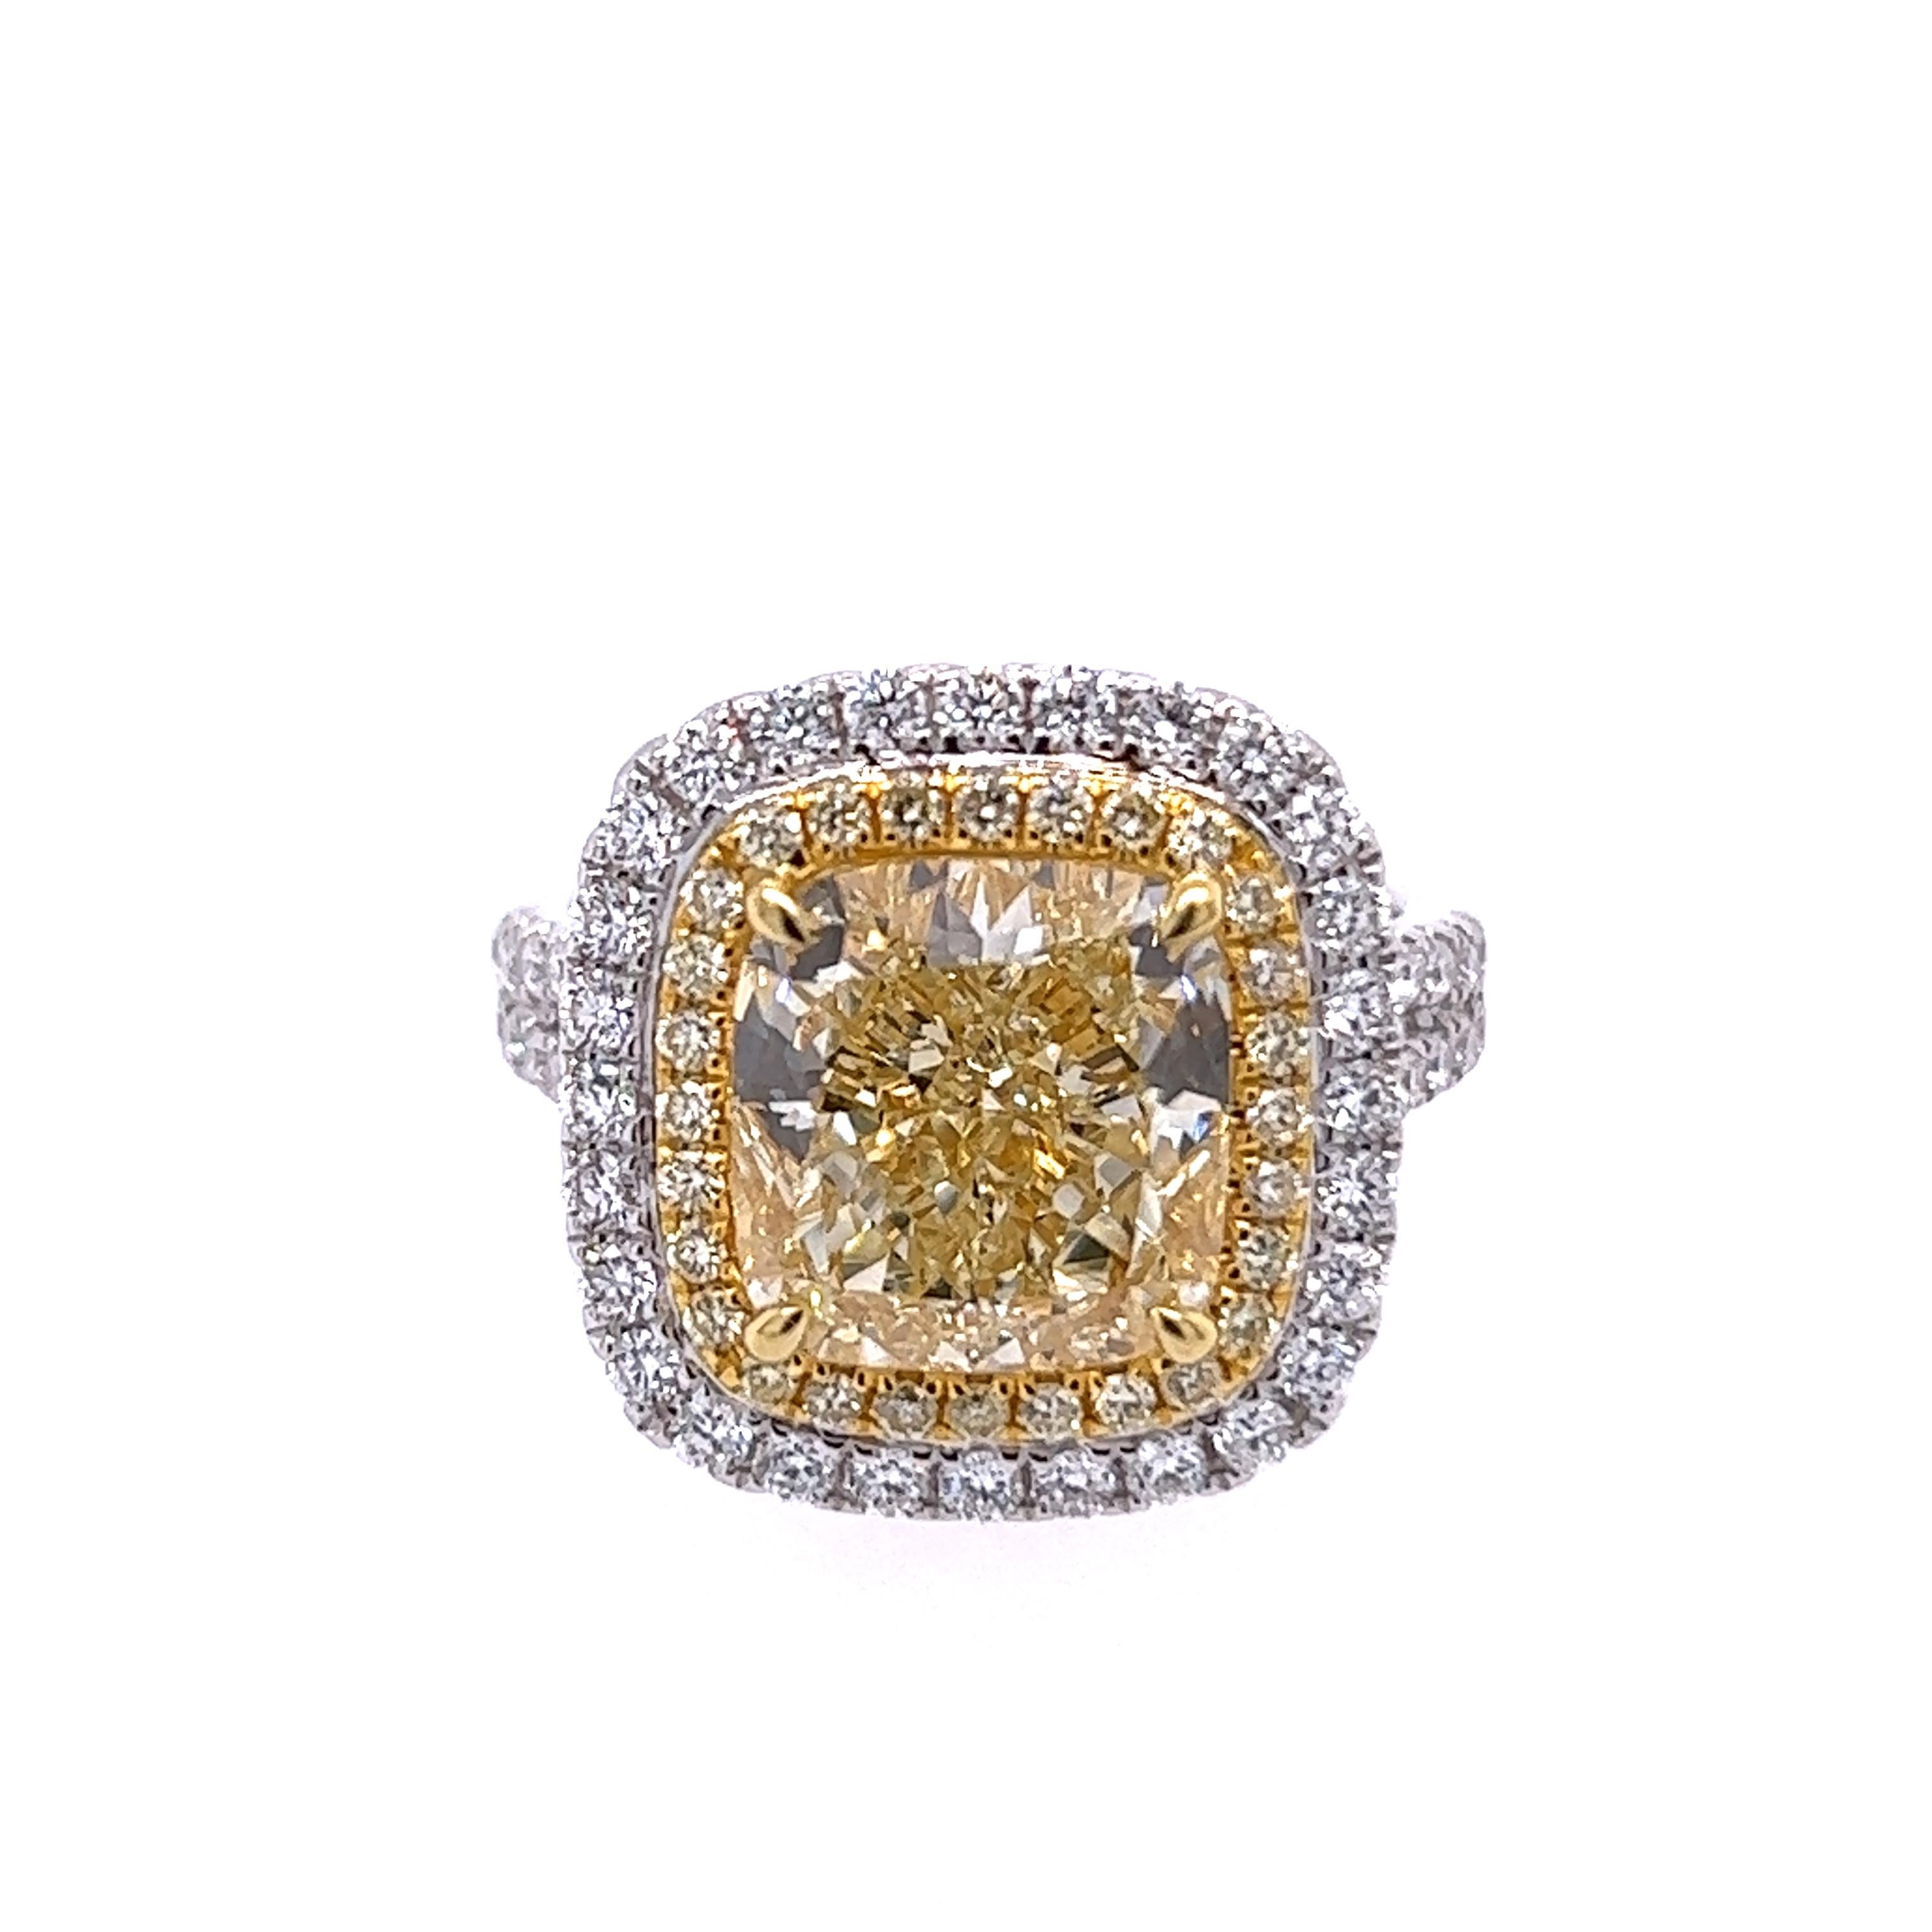 Rosenberg Diamonds & Co. 6,14 Karat Cushion-Schliff hellgelb VS2 Klarheit wird von einem GIA-Zertifikat begleitet. Dieses unglaublich helle Kissen steckt voller Leben und ist in eine handgefertigte Fassung aus 18 Karat Weiß- und Gelbgold gefasst.